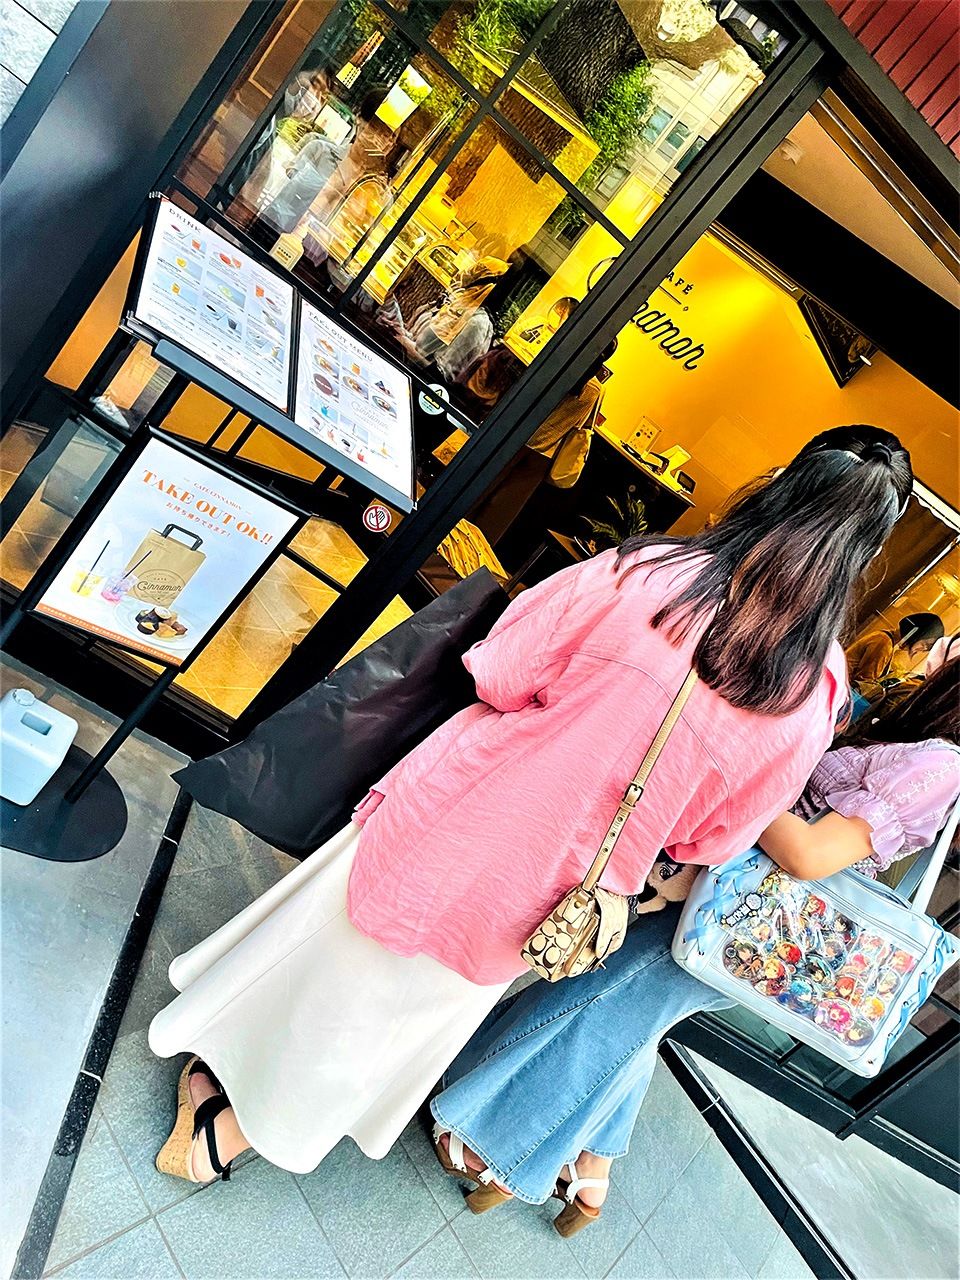 Una cafetería de aspecto elegante. En la entrada, sin embargo, una clienta lleva una itabaggu. (Imagen de la autora)